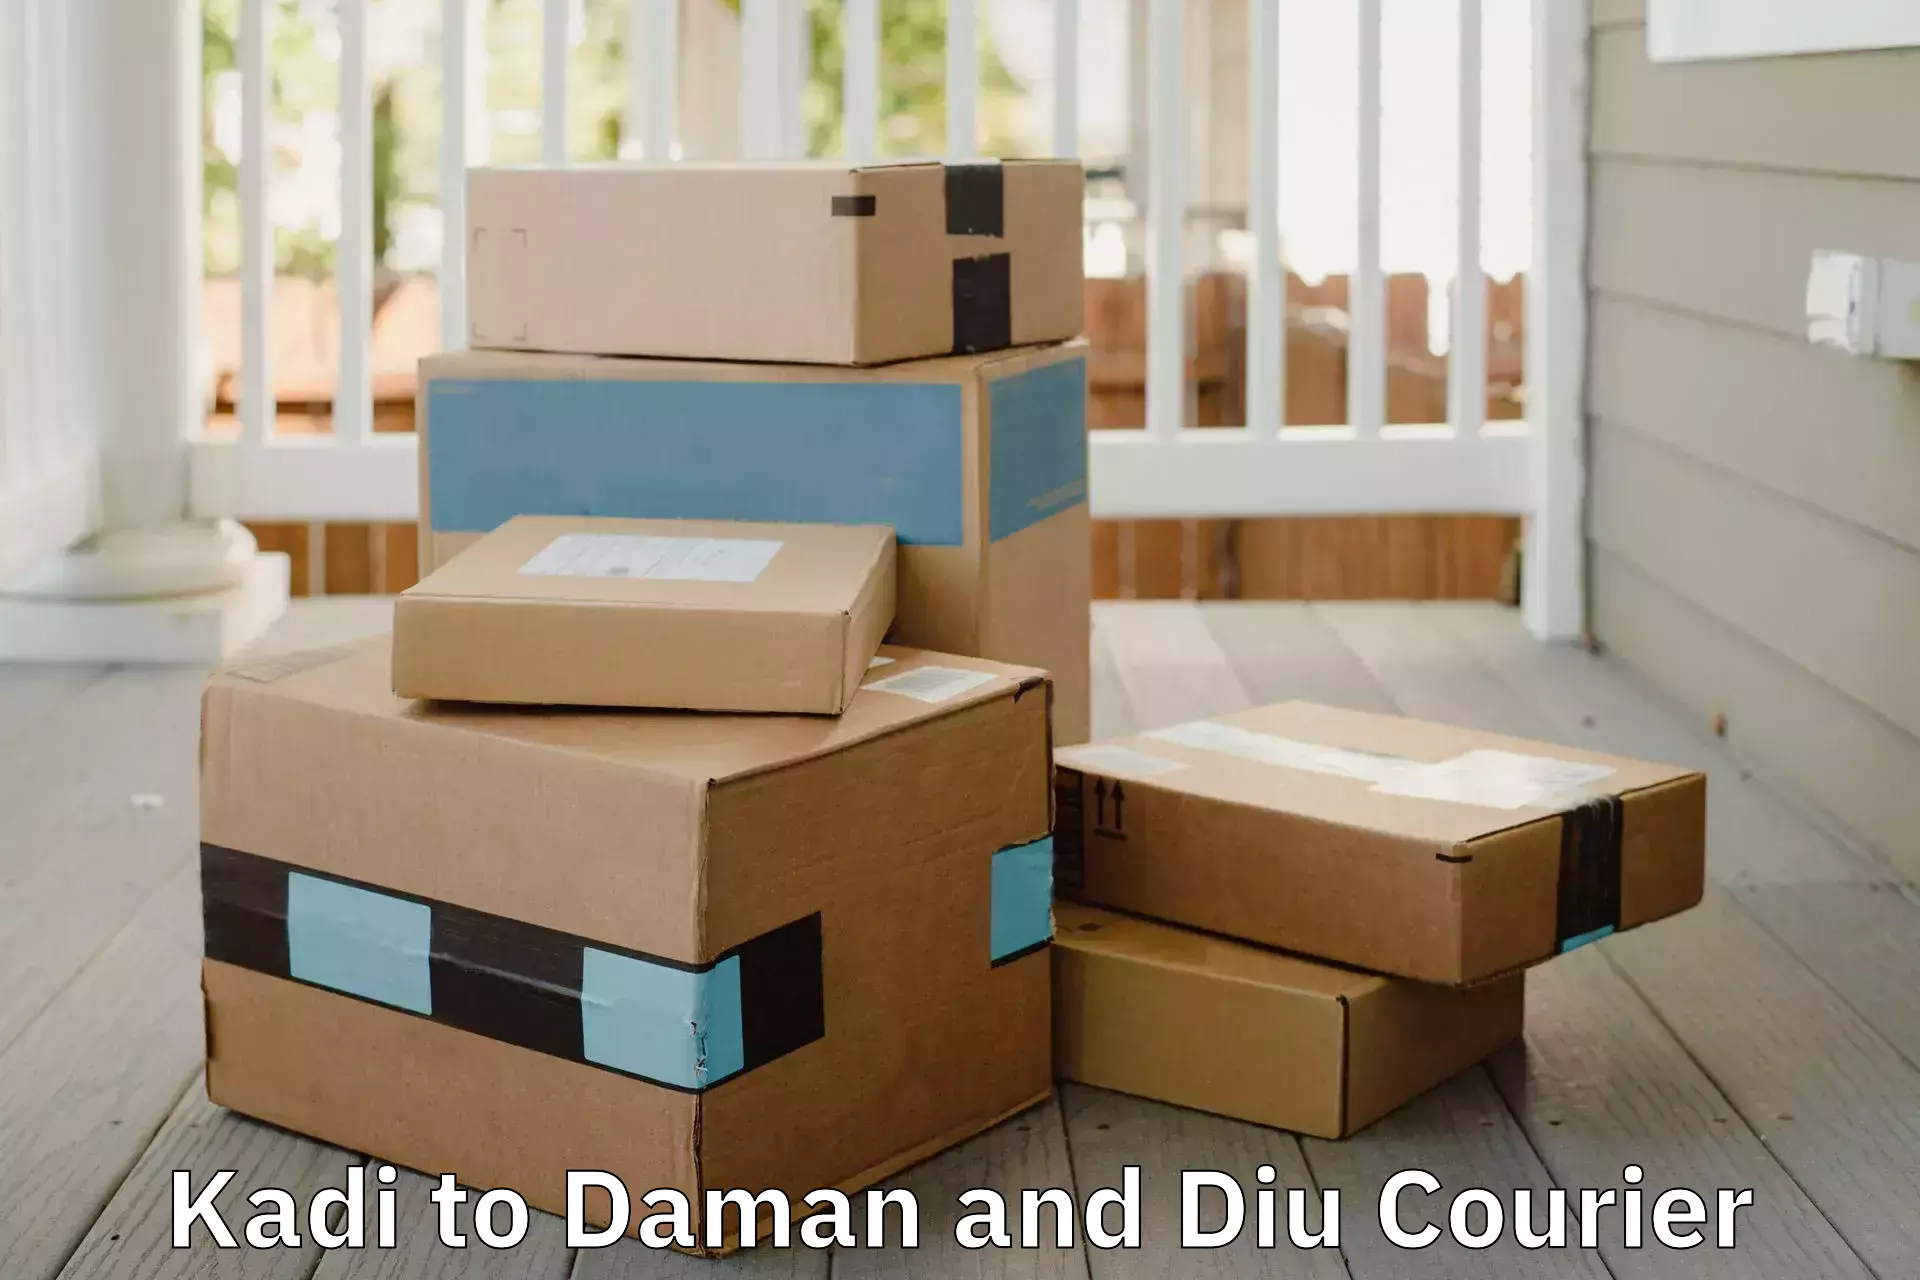 Advanced household movers Kadi to Daman and Diu